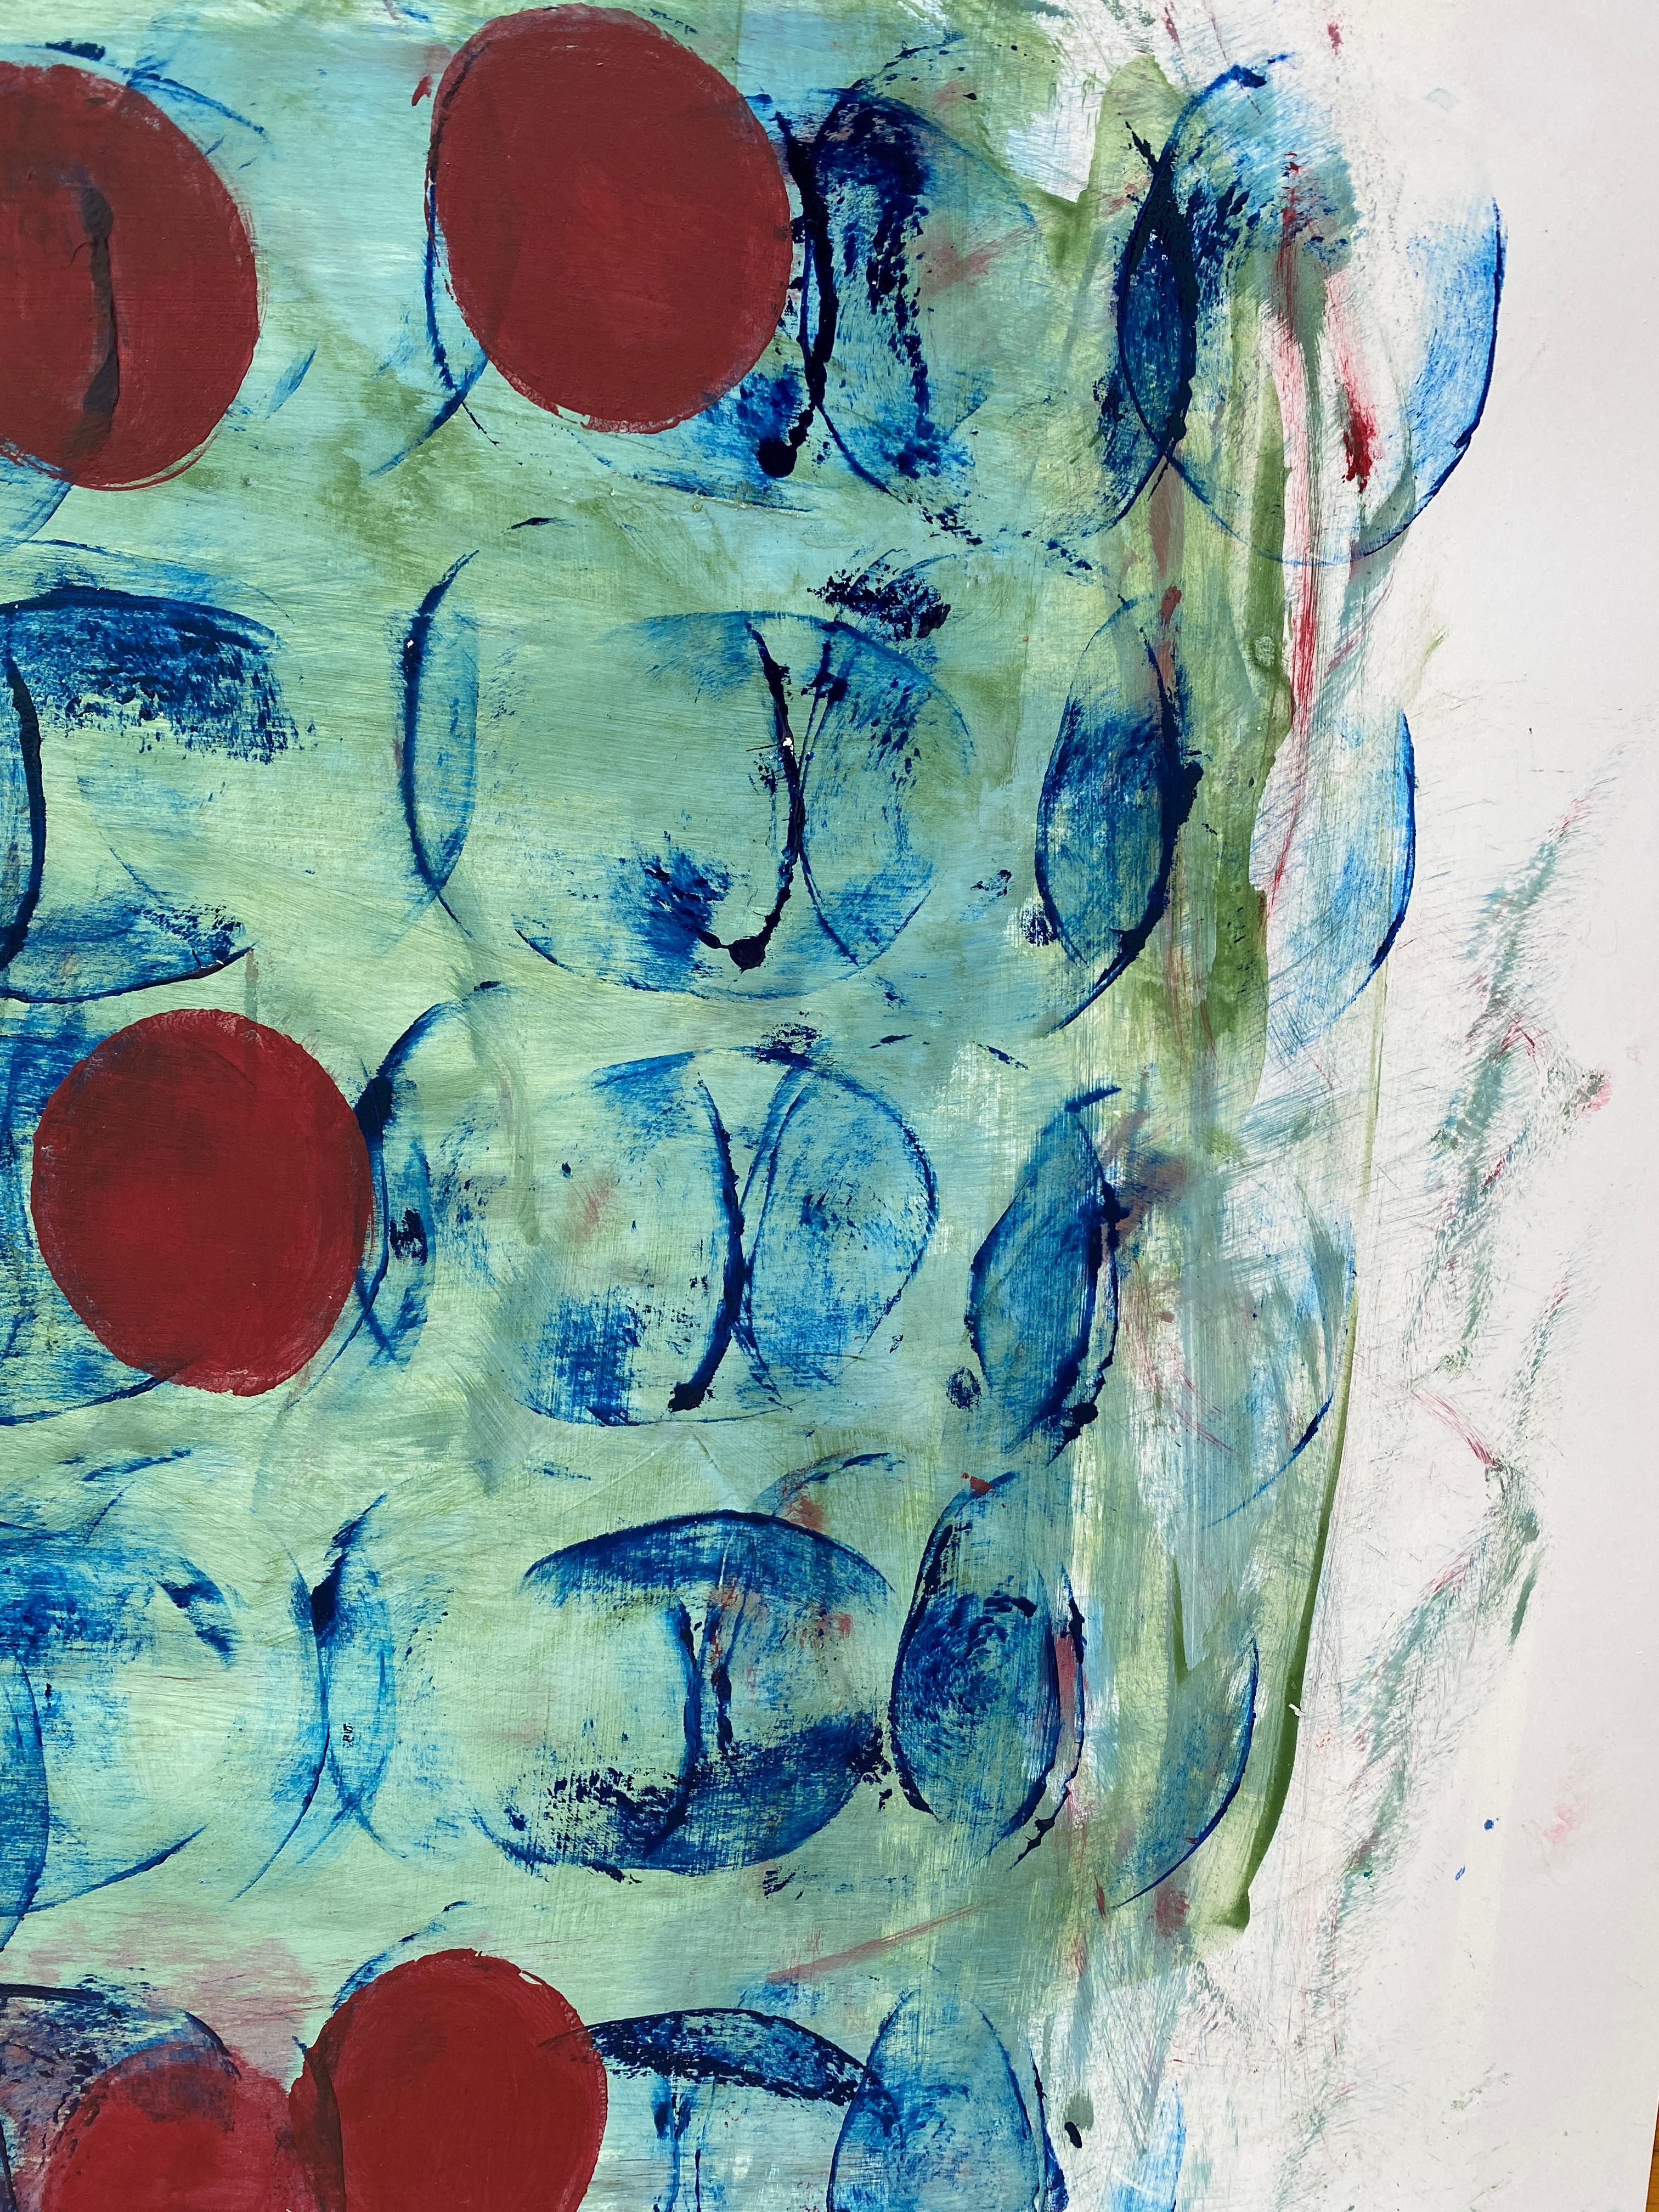 Sous l'eau : cercles rouges contre fond bleu  - Abstrait Painting par Lisa Lightman